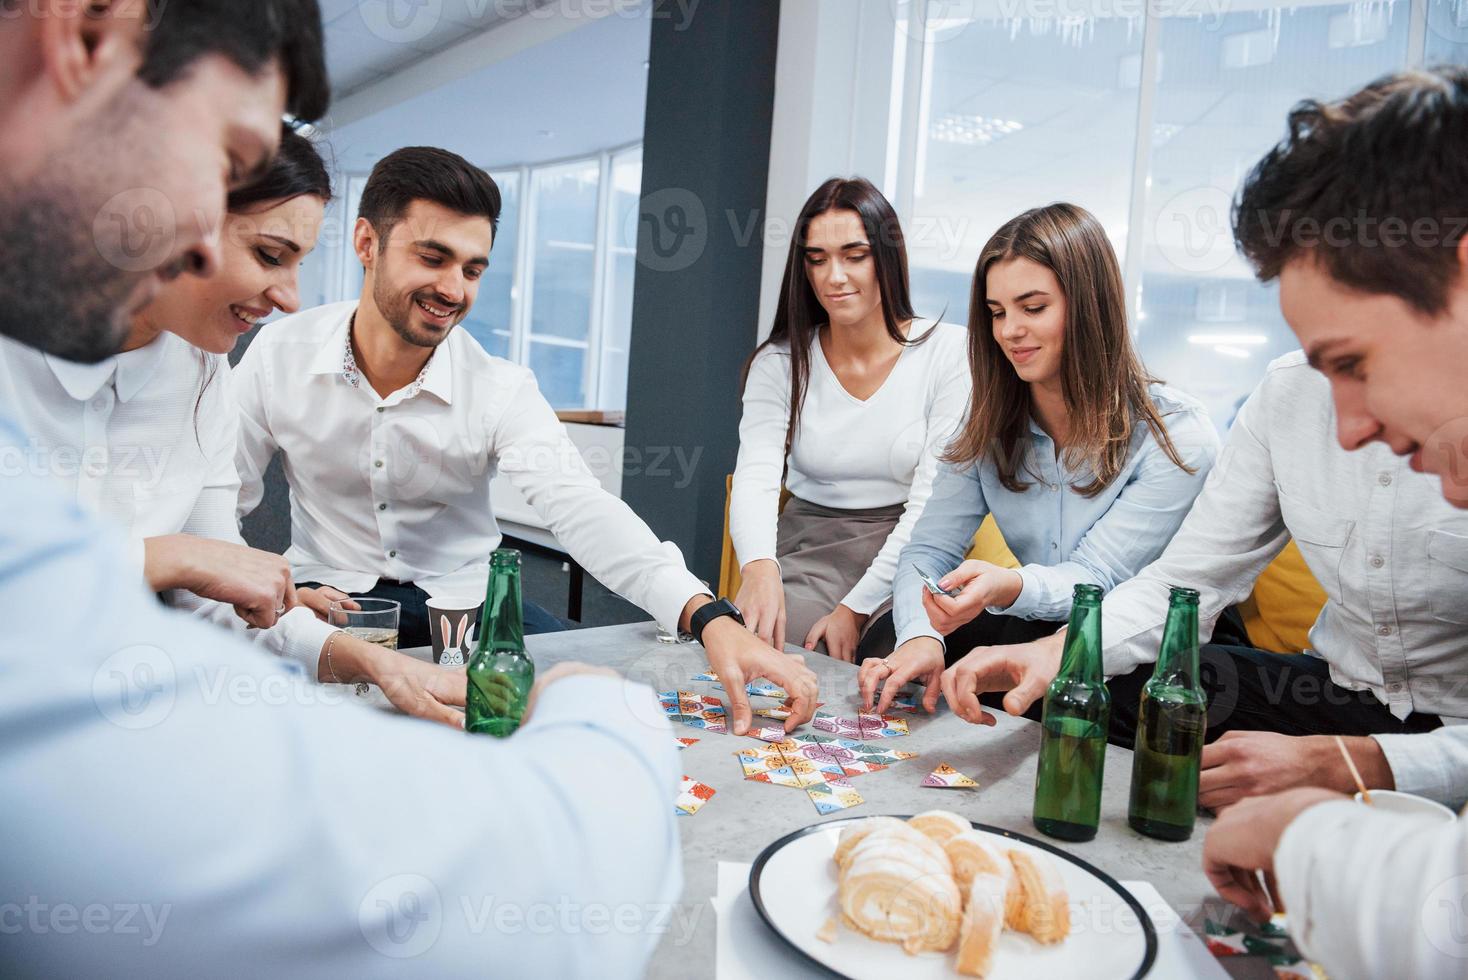 reunião amigável. relaxando com o jogo. celebrando negócio de sucesso. jovens trabalhadores de escritório sentados perto da mesa com álcool foto